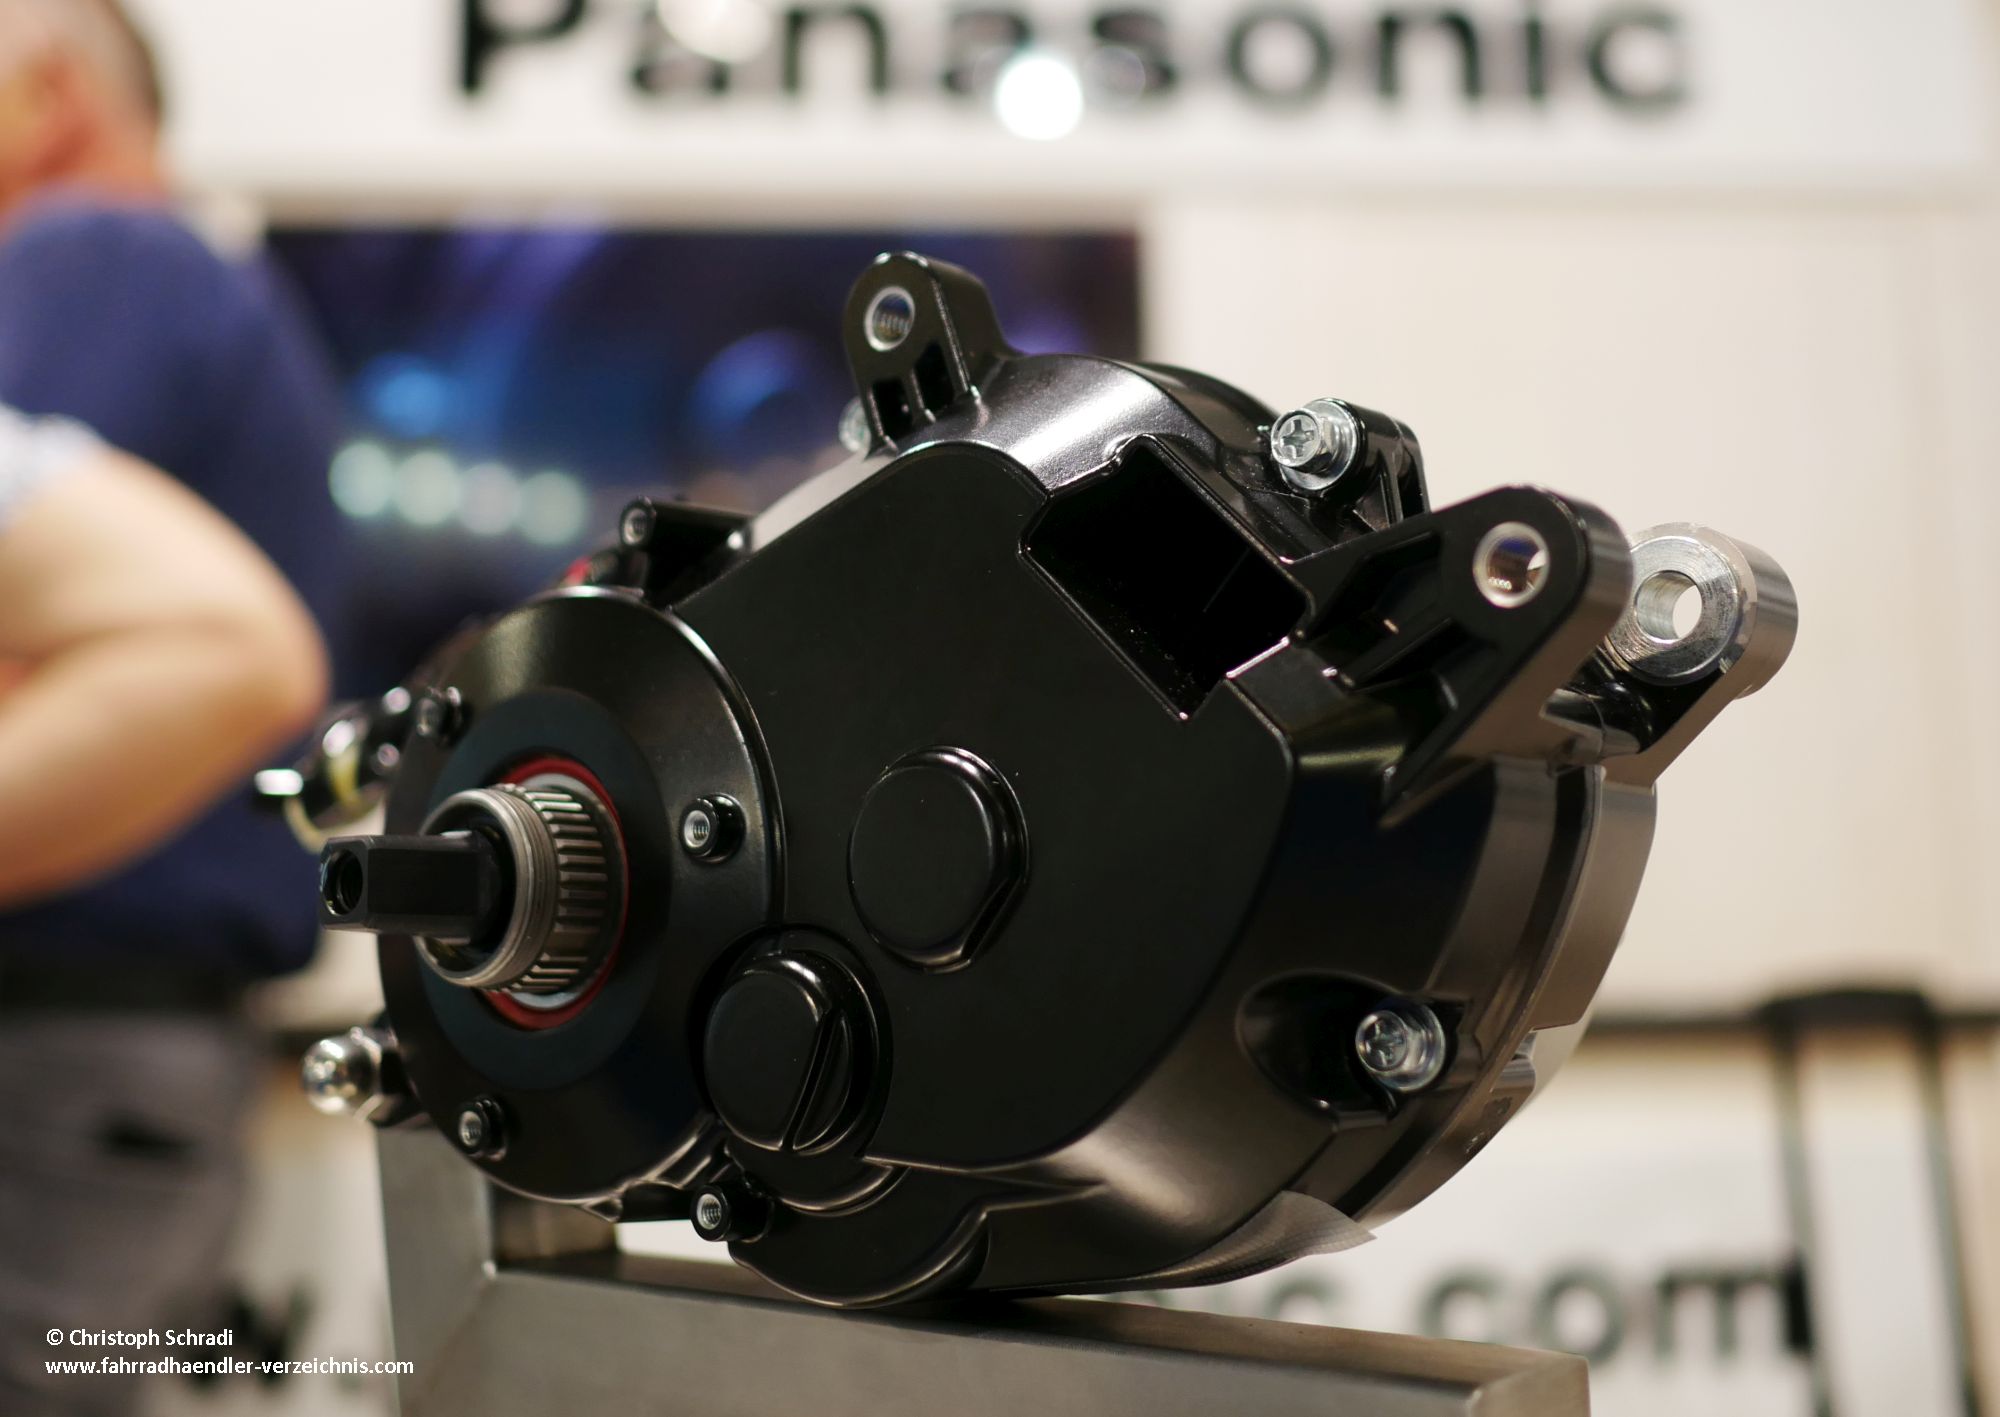 Panasonic GX Power Motor für E-Bike bis 25 km/h für 2020 - leiser und leistungsstarker Panasonic Antrieb